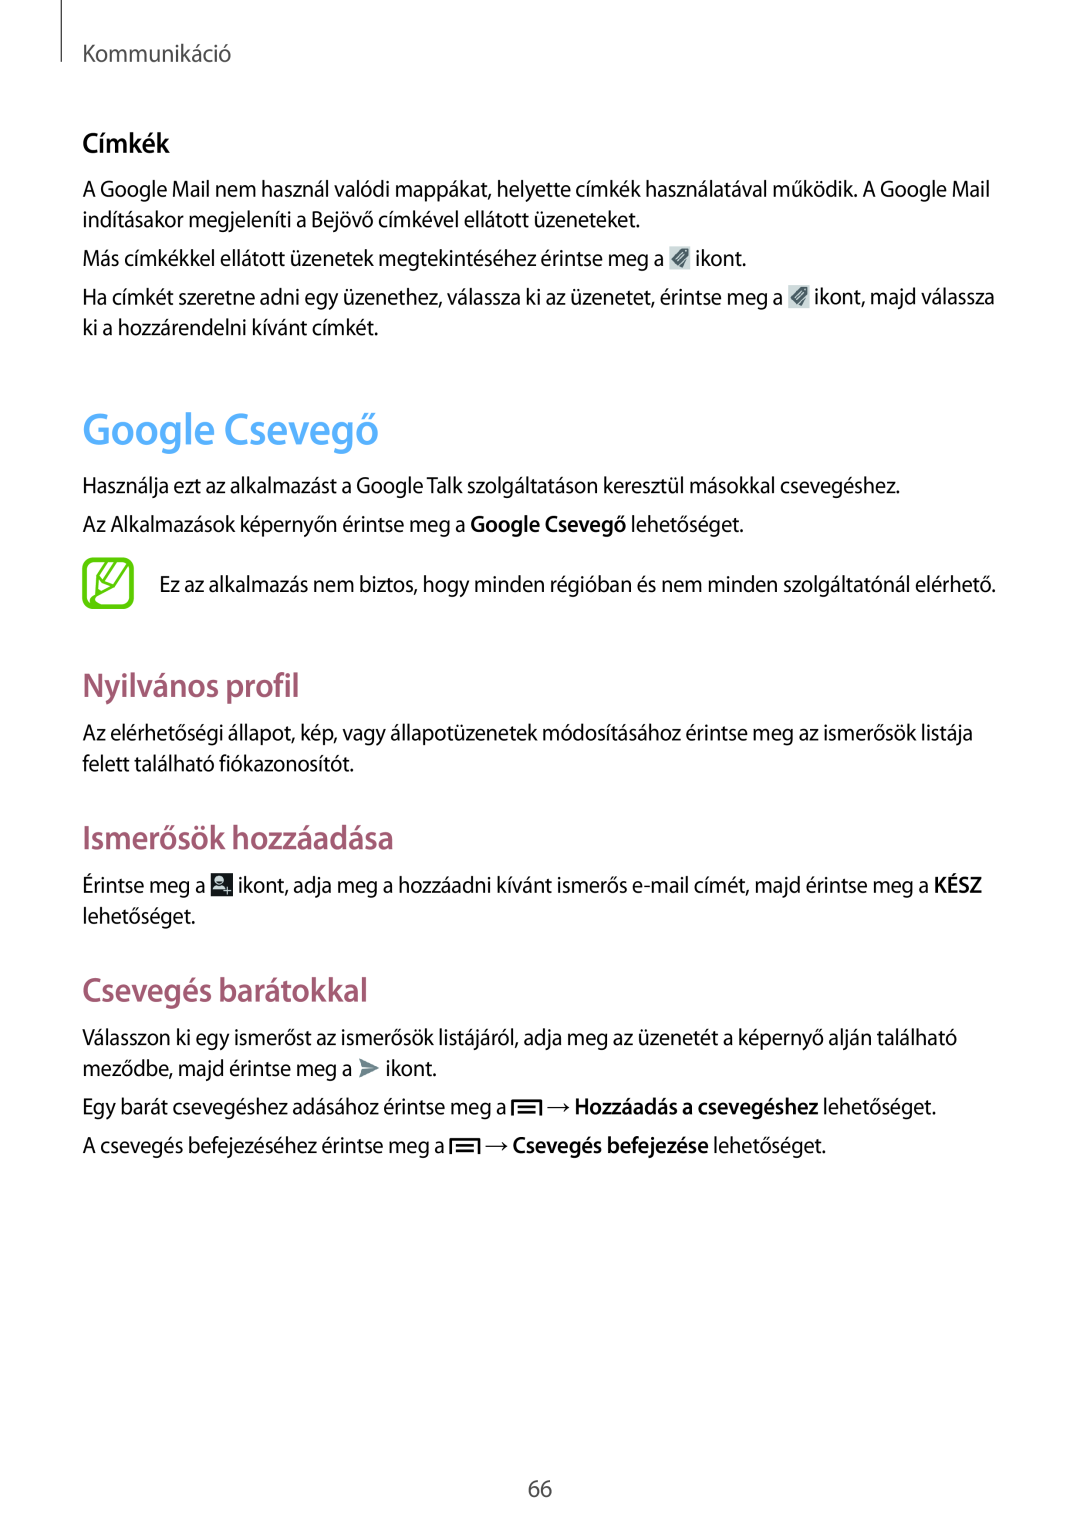 Samsung GT2N7100RWDXEH Google Csevegő, Nyilvános profil, Ismerősök hozzáadása, Csevegés barátokkal, Címkék, Kommunikáció 